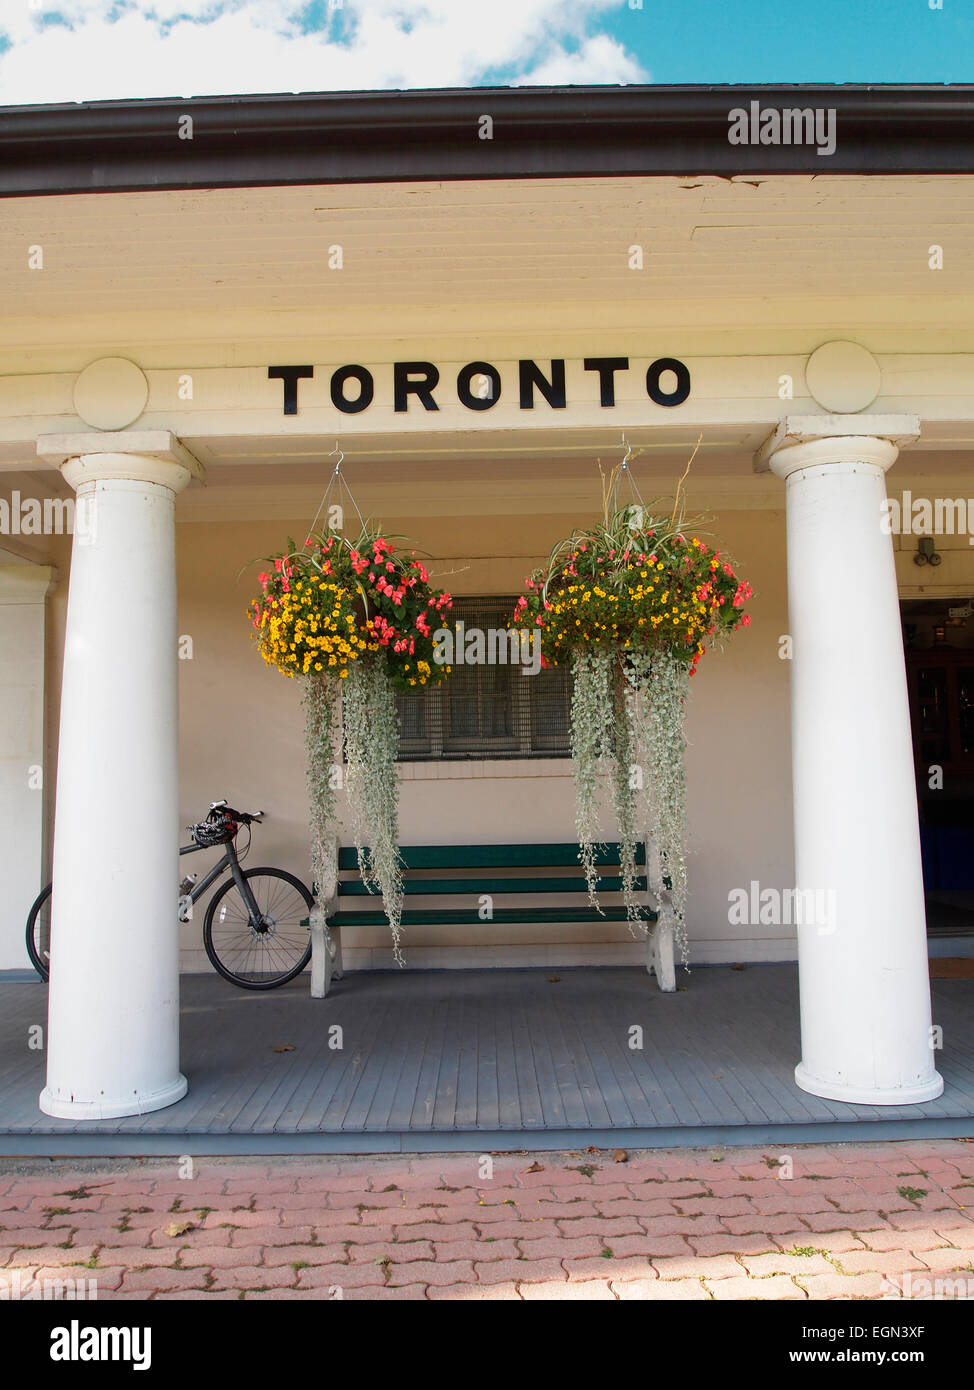 Signe pour 'Toronto' à West Toronto Bowling Club's iconic clubhouse - c'est dans le style d'un temple grec classique Banque D'Images